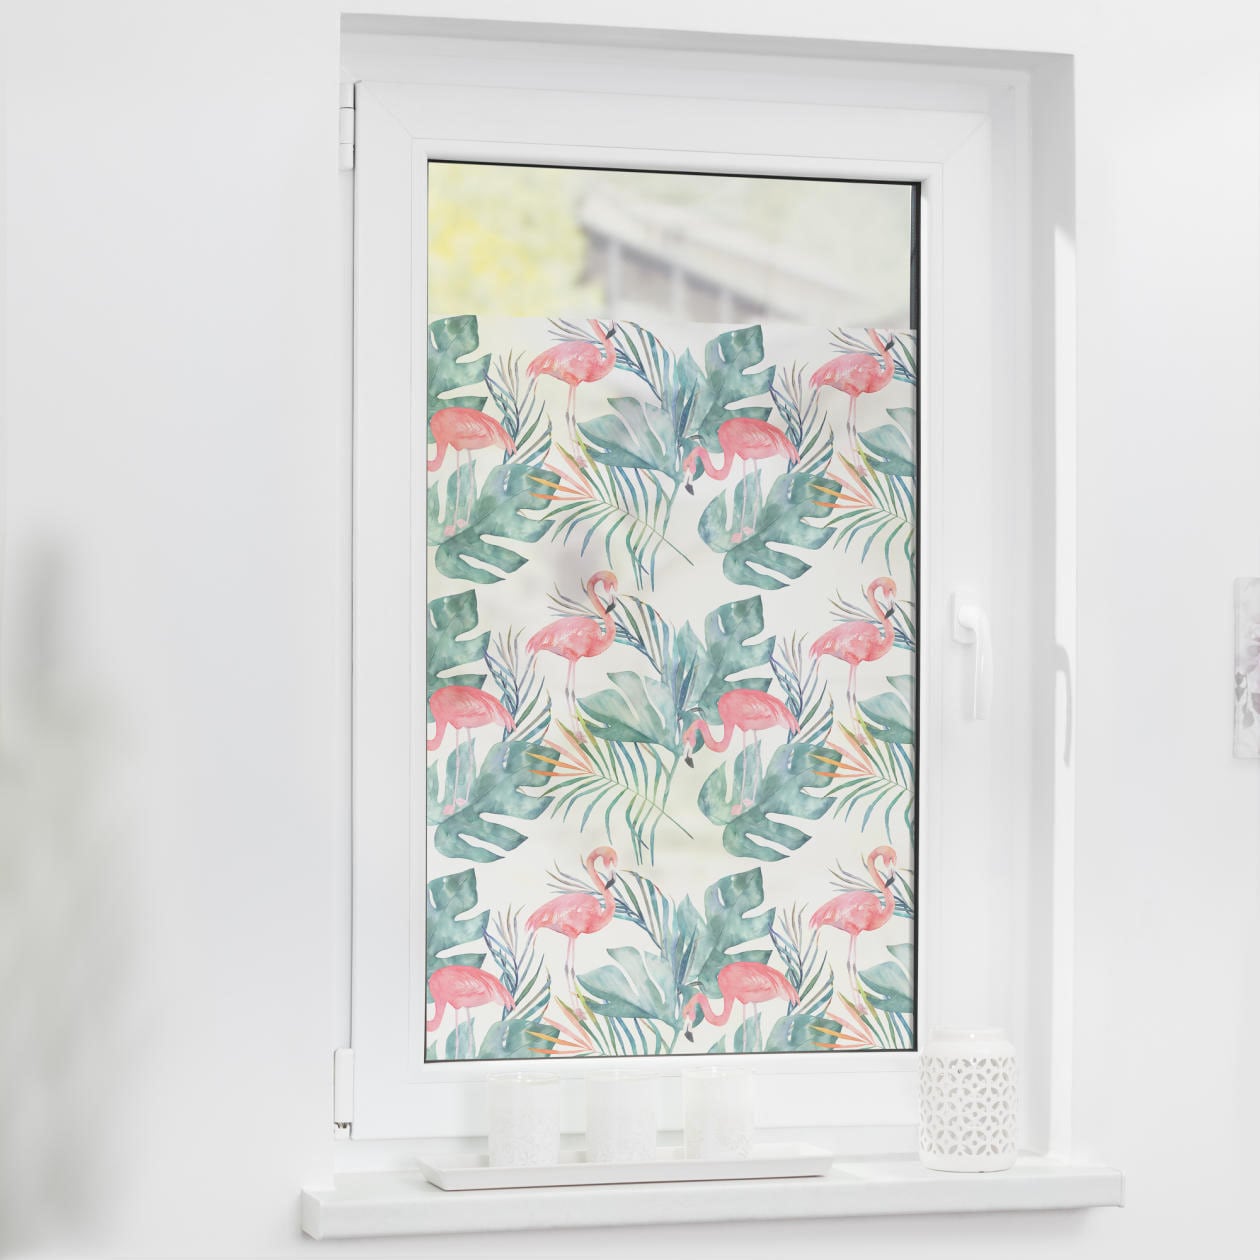 Fensterfolie »Fensterfolie selbstklebend, Sichtschutz, Flamingo - Rosa Grün«, 1 St.,...